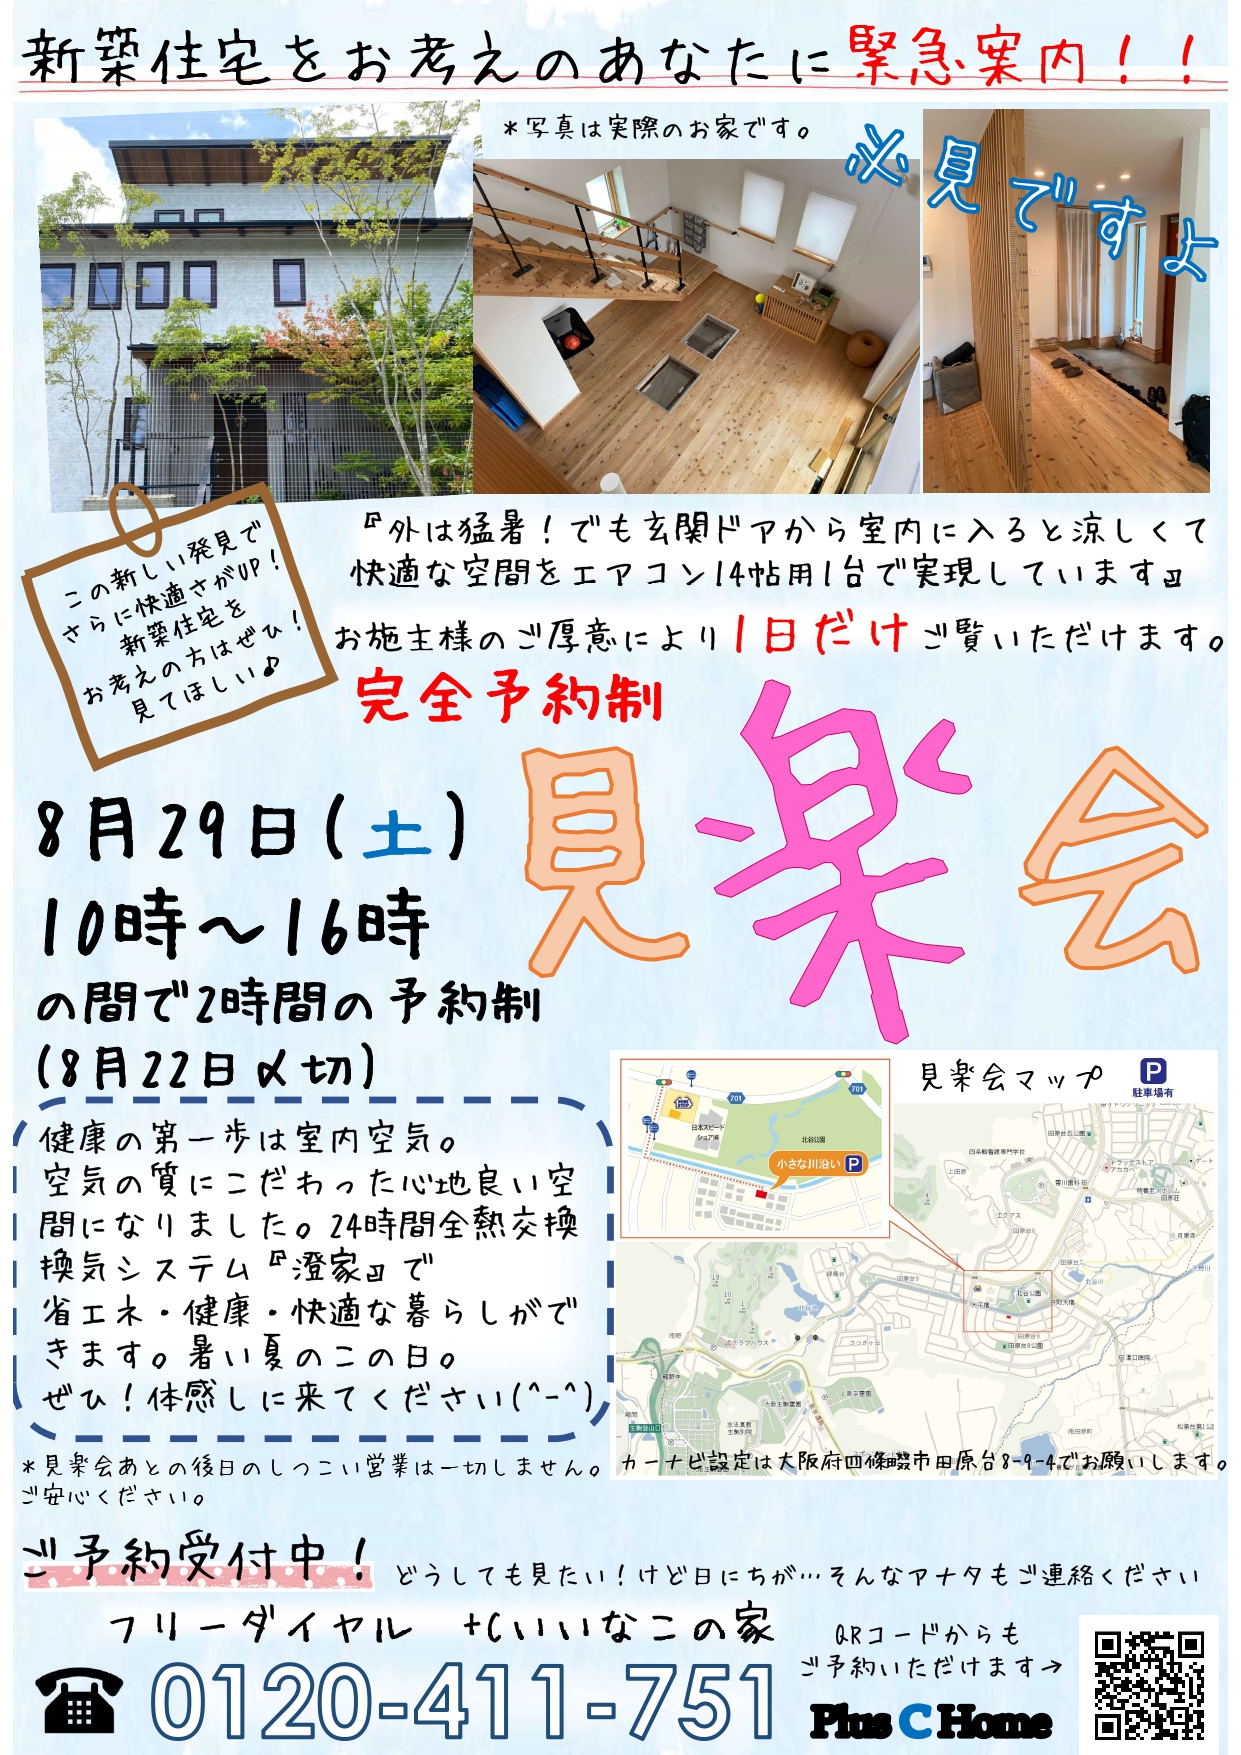 高気密・高断熱住宅を扱う大阪市内の工務店Plus C Homeが住宅見学会を開催♪